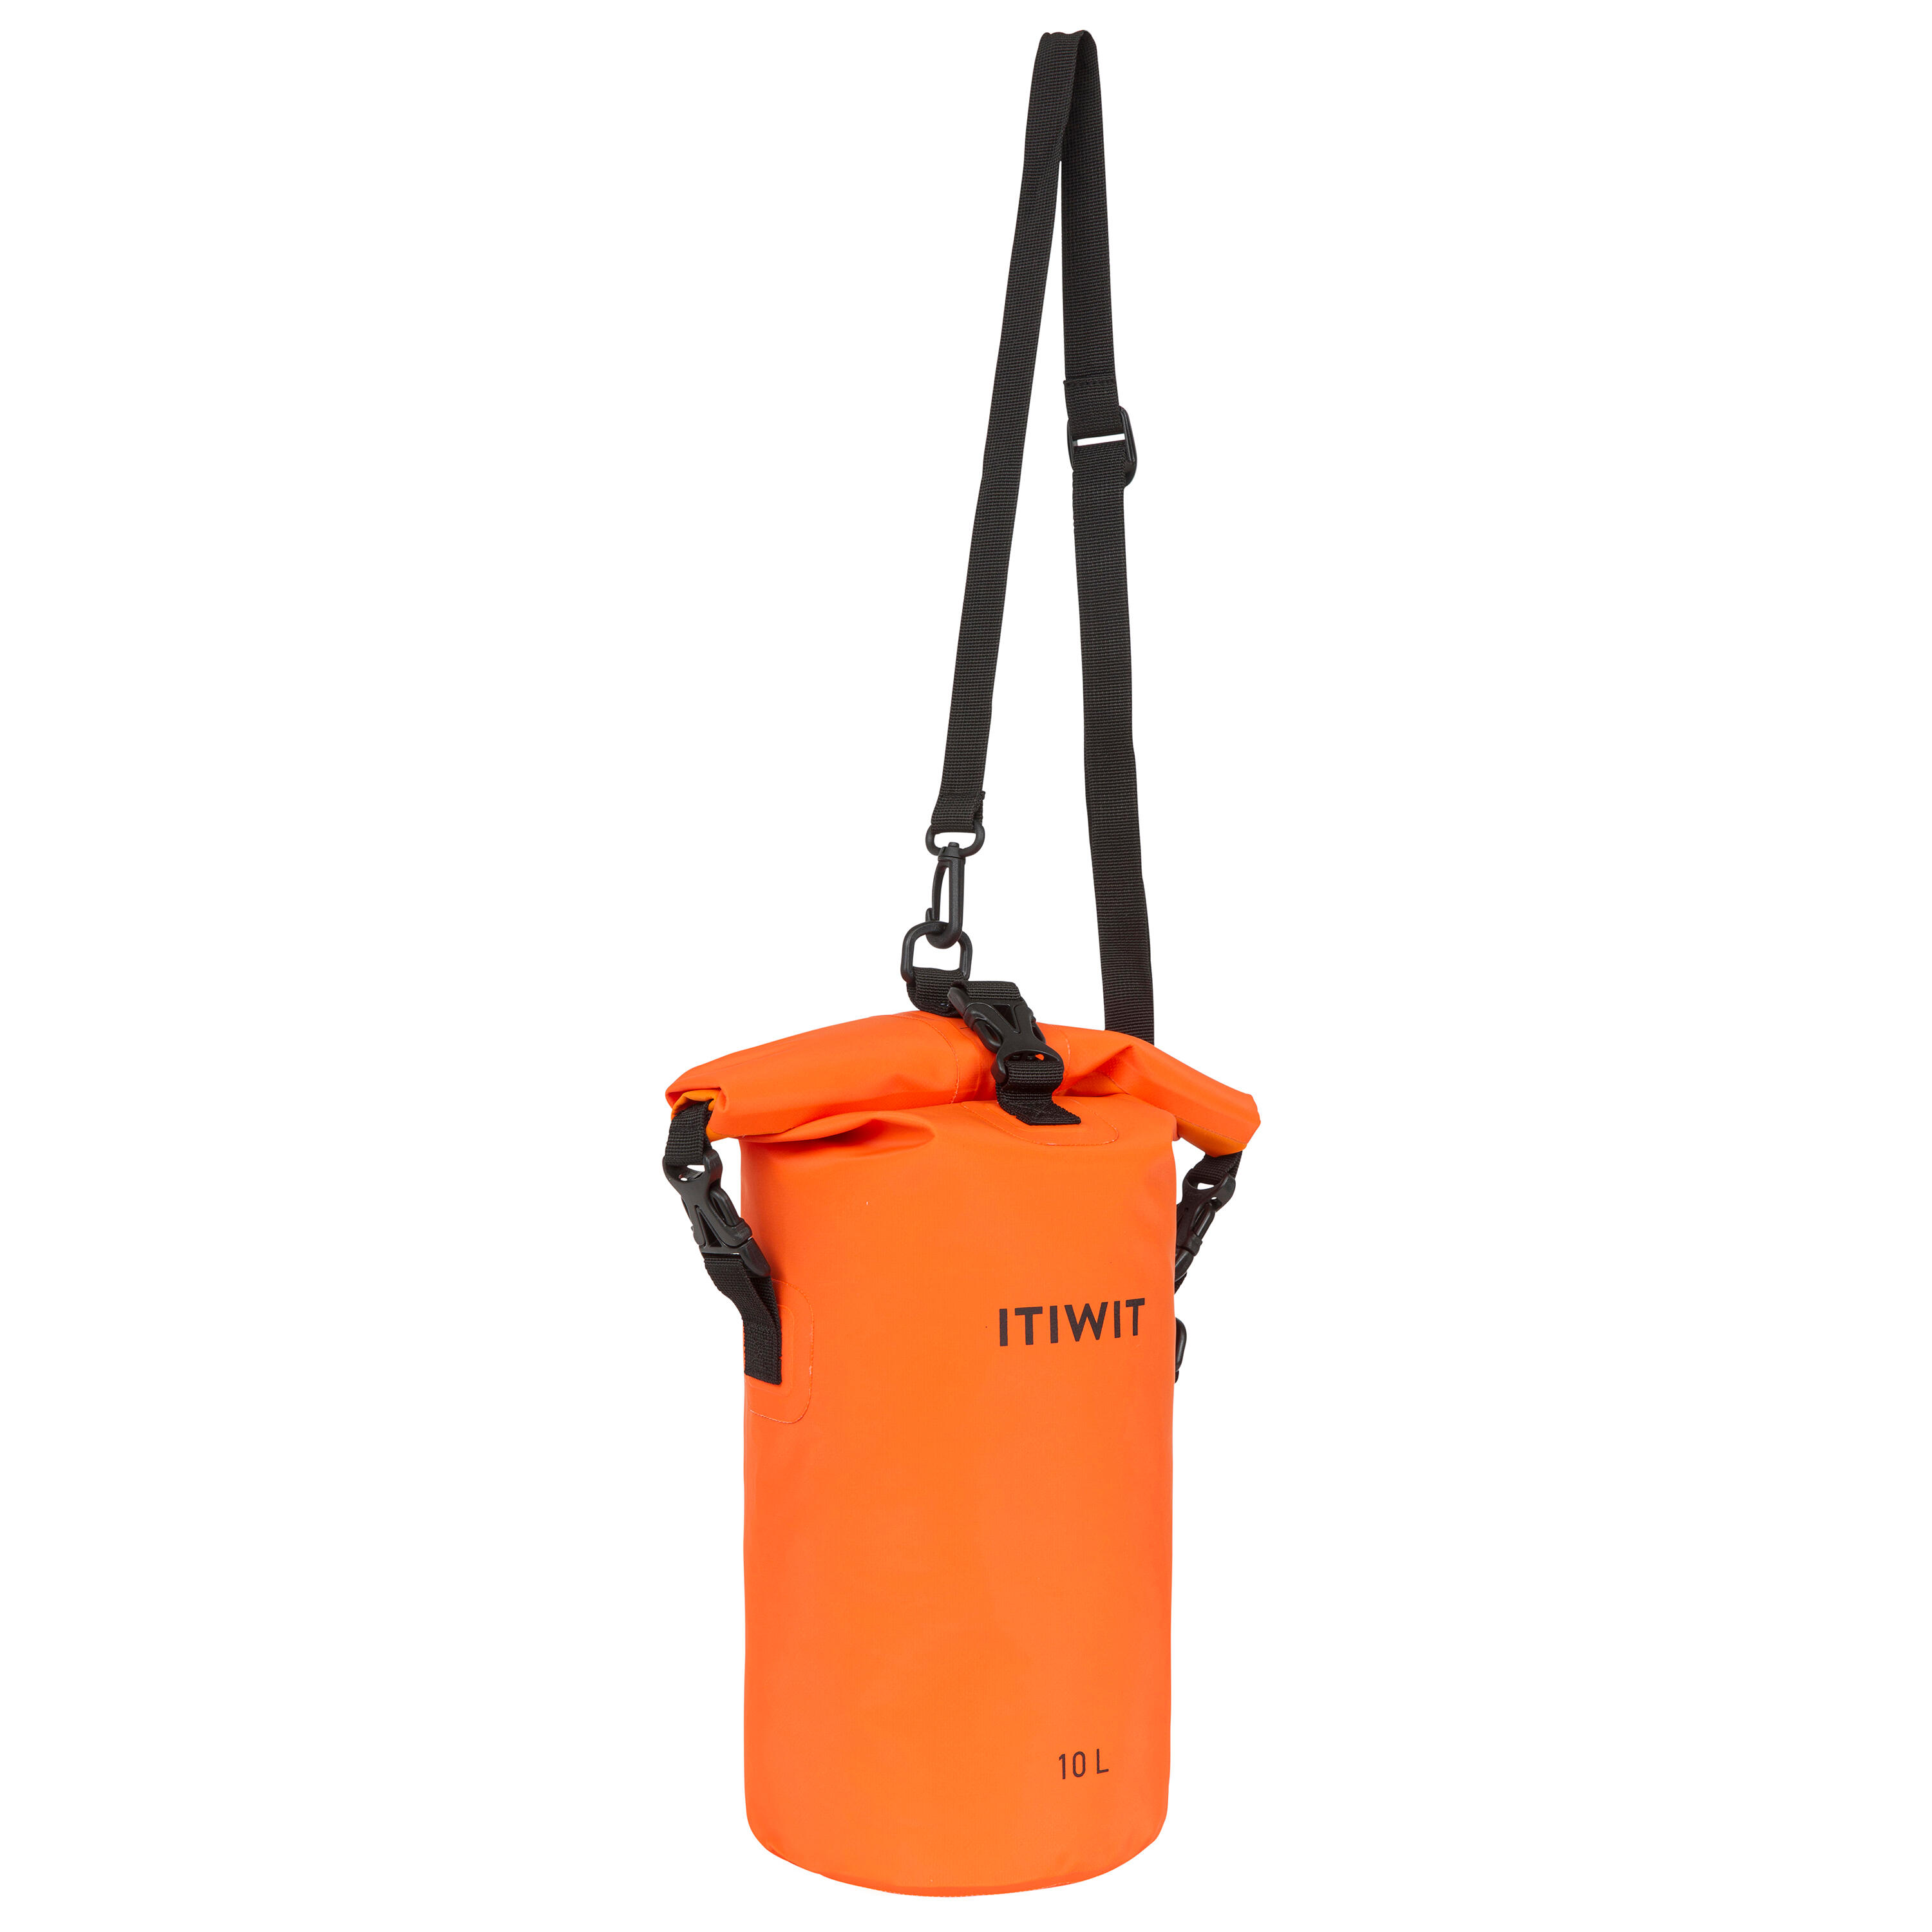 4 Elements - Waterproof bag and Dry Bag Roll Top waterproof Rucksack, Wet  bag & | eBay